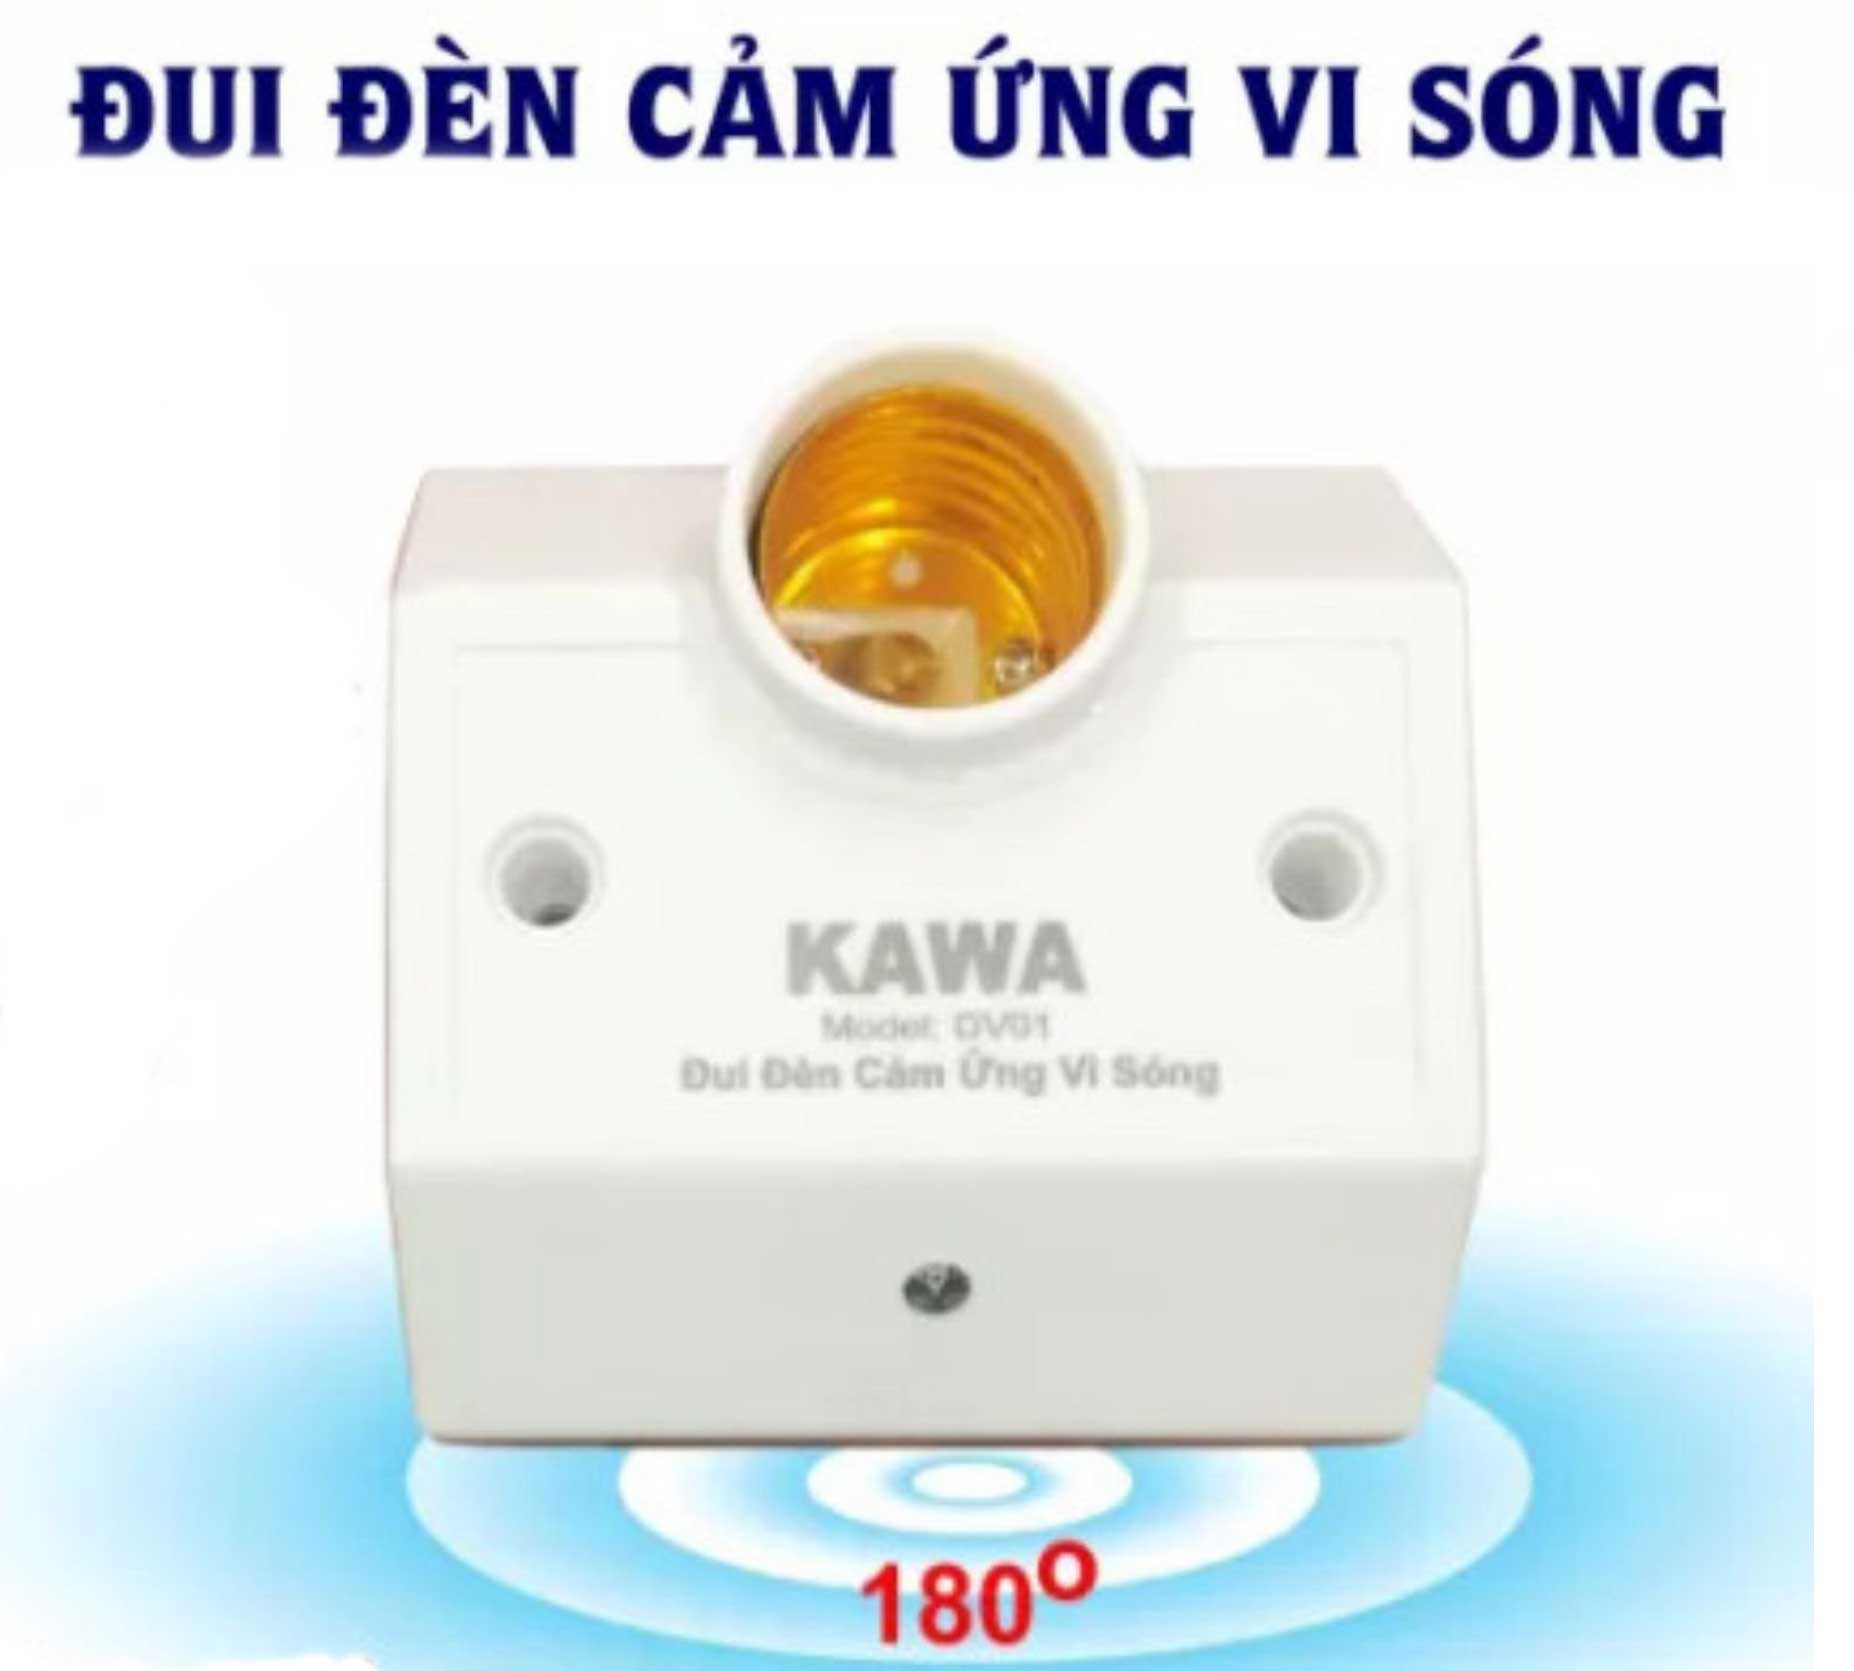 Dui Den Cam Ung Vi Song Dv01 Kawa